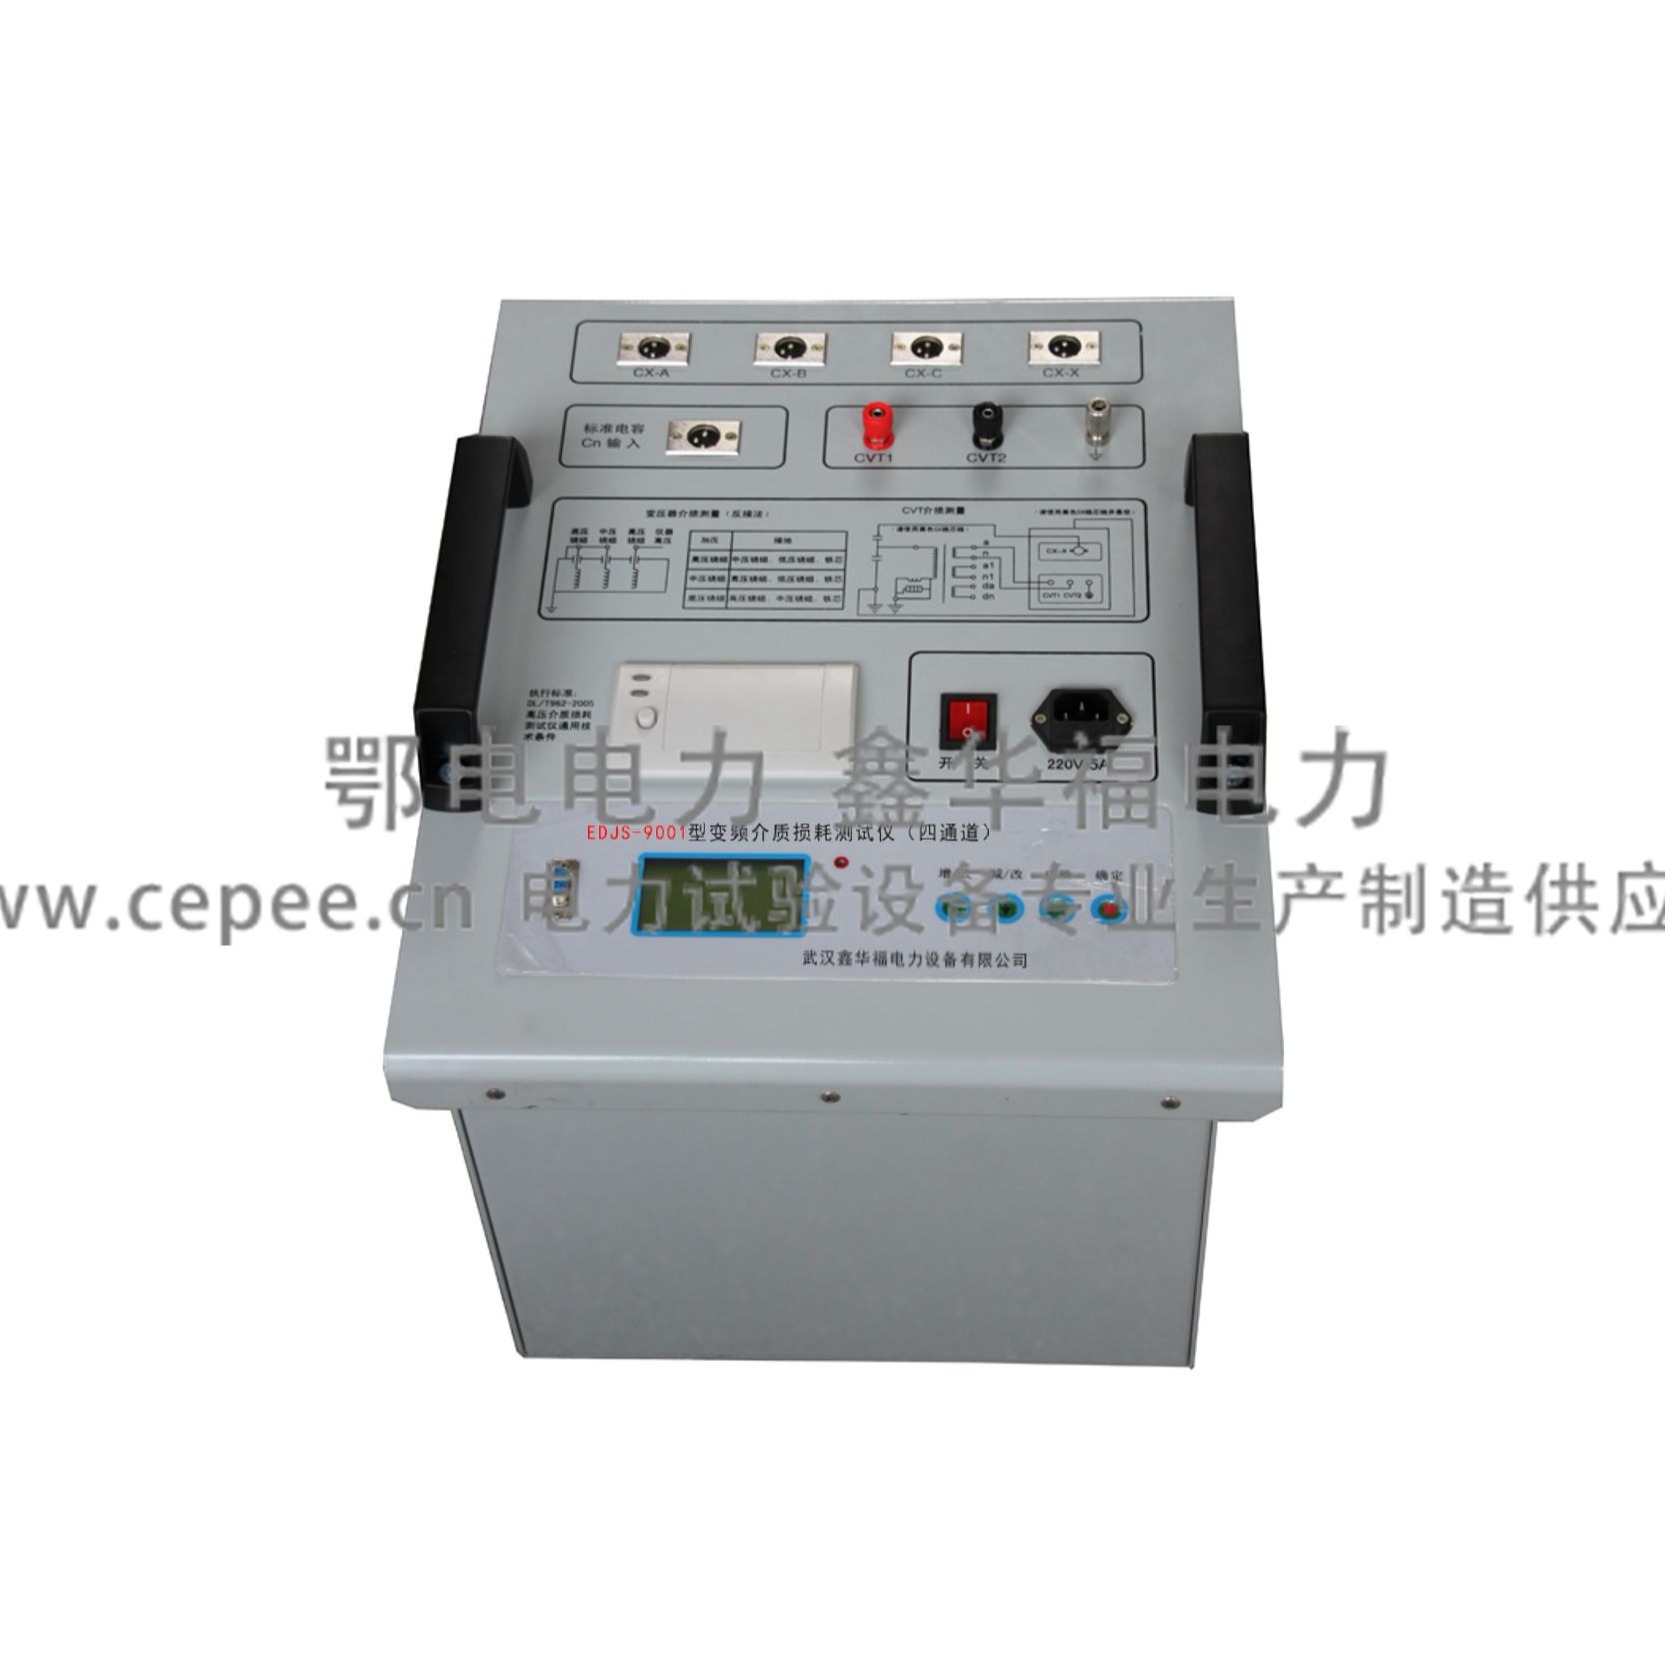 EDJS-9001变频介质损耗测试仪（四通道）